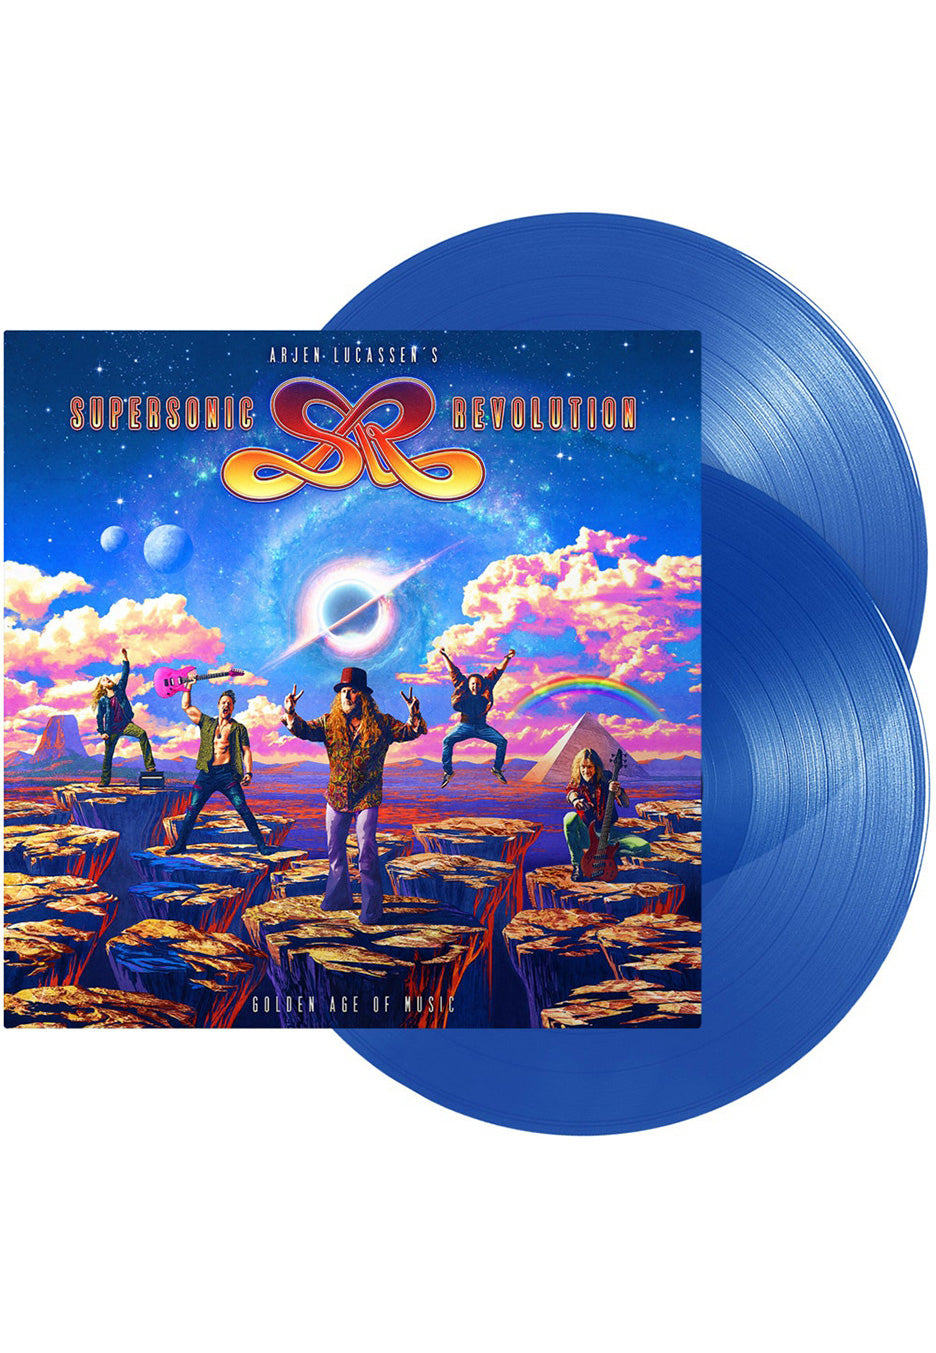 Arjen Lucassen's Supersonic Revolution - Golden Age Of Music Blue - Colored 2 Vinyl